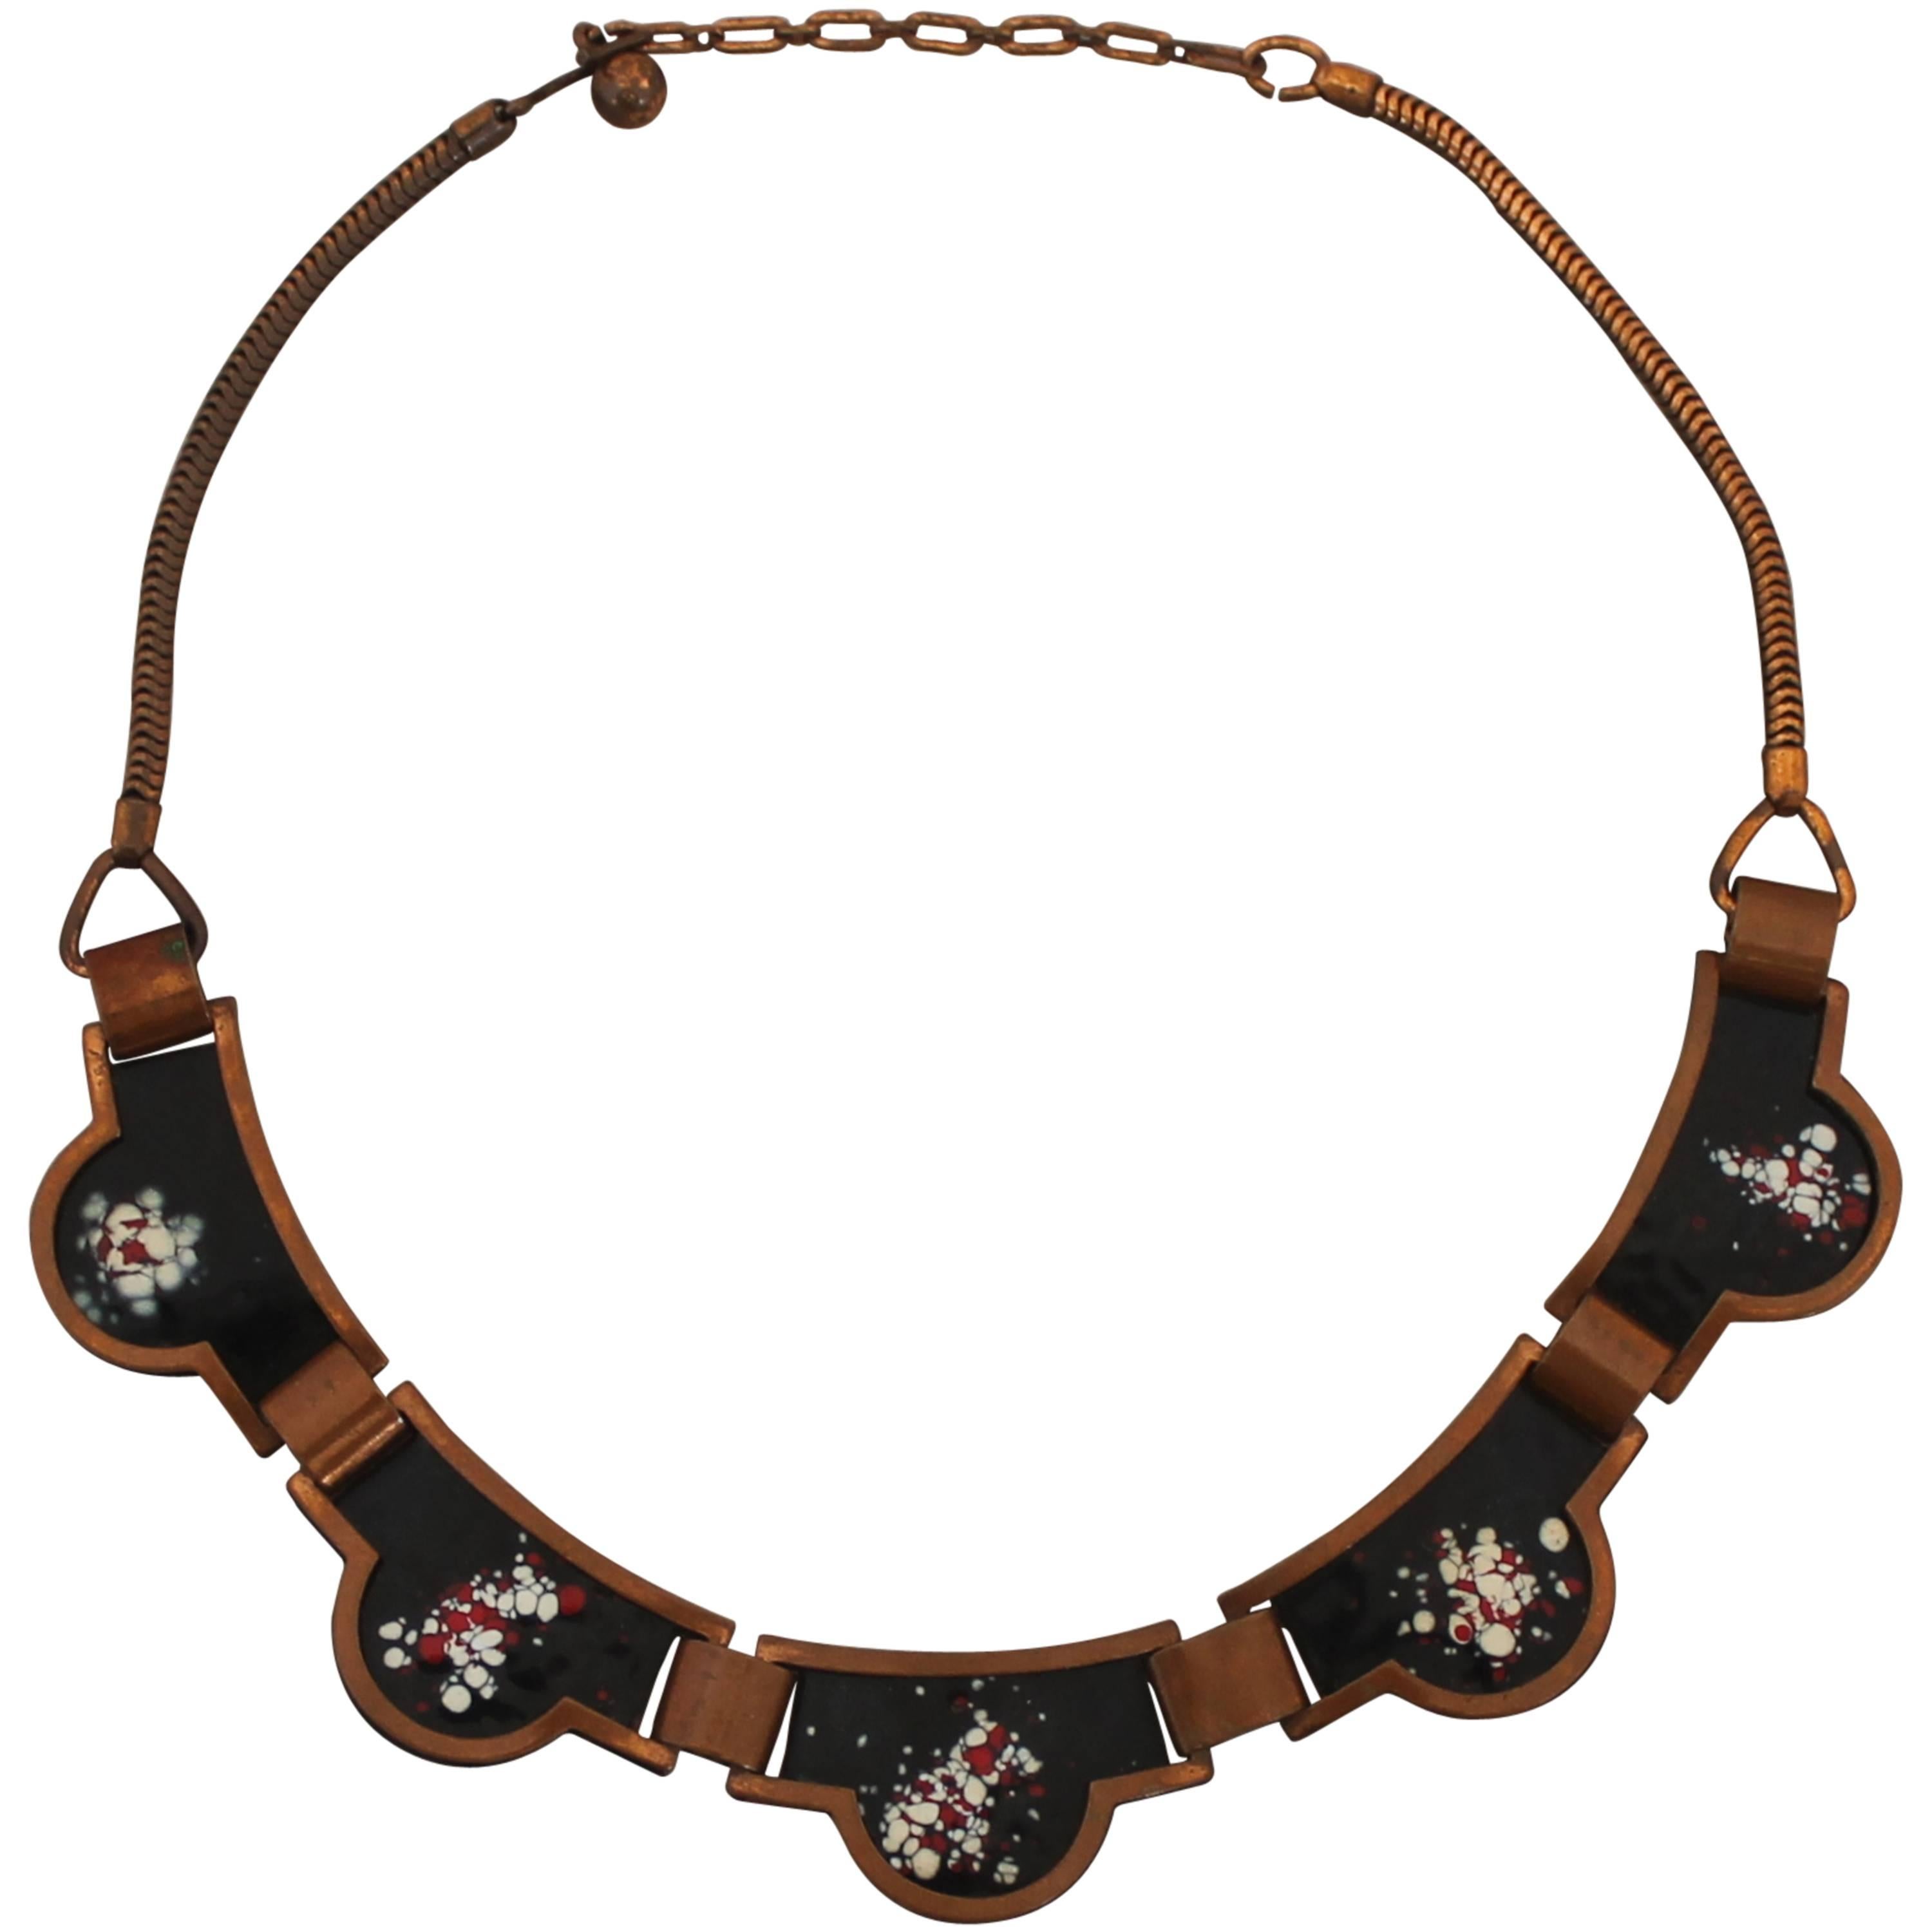 Rebajes Vintage Copper Necklace with Black Enamel - circa 1950's